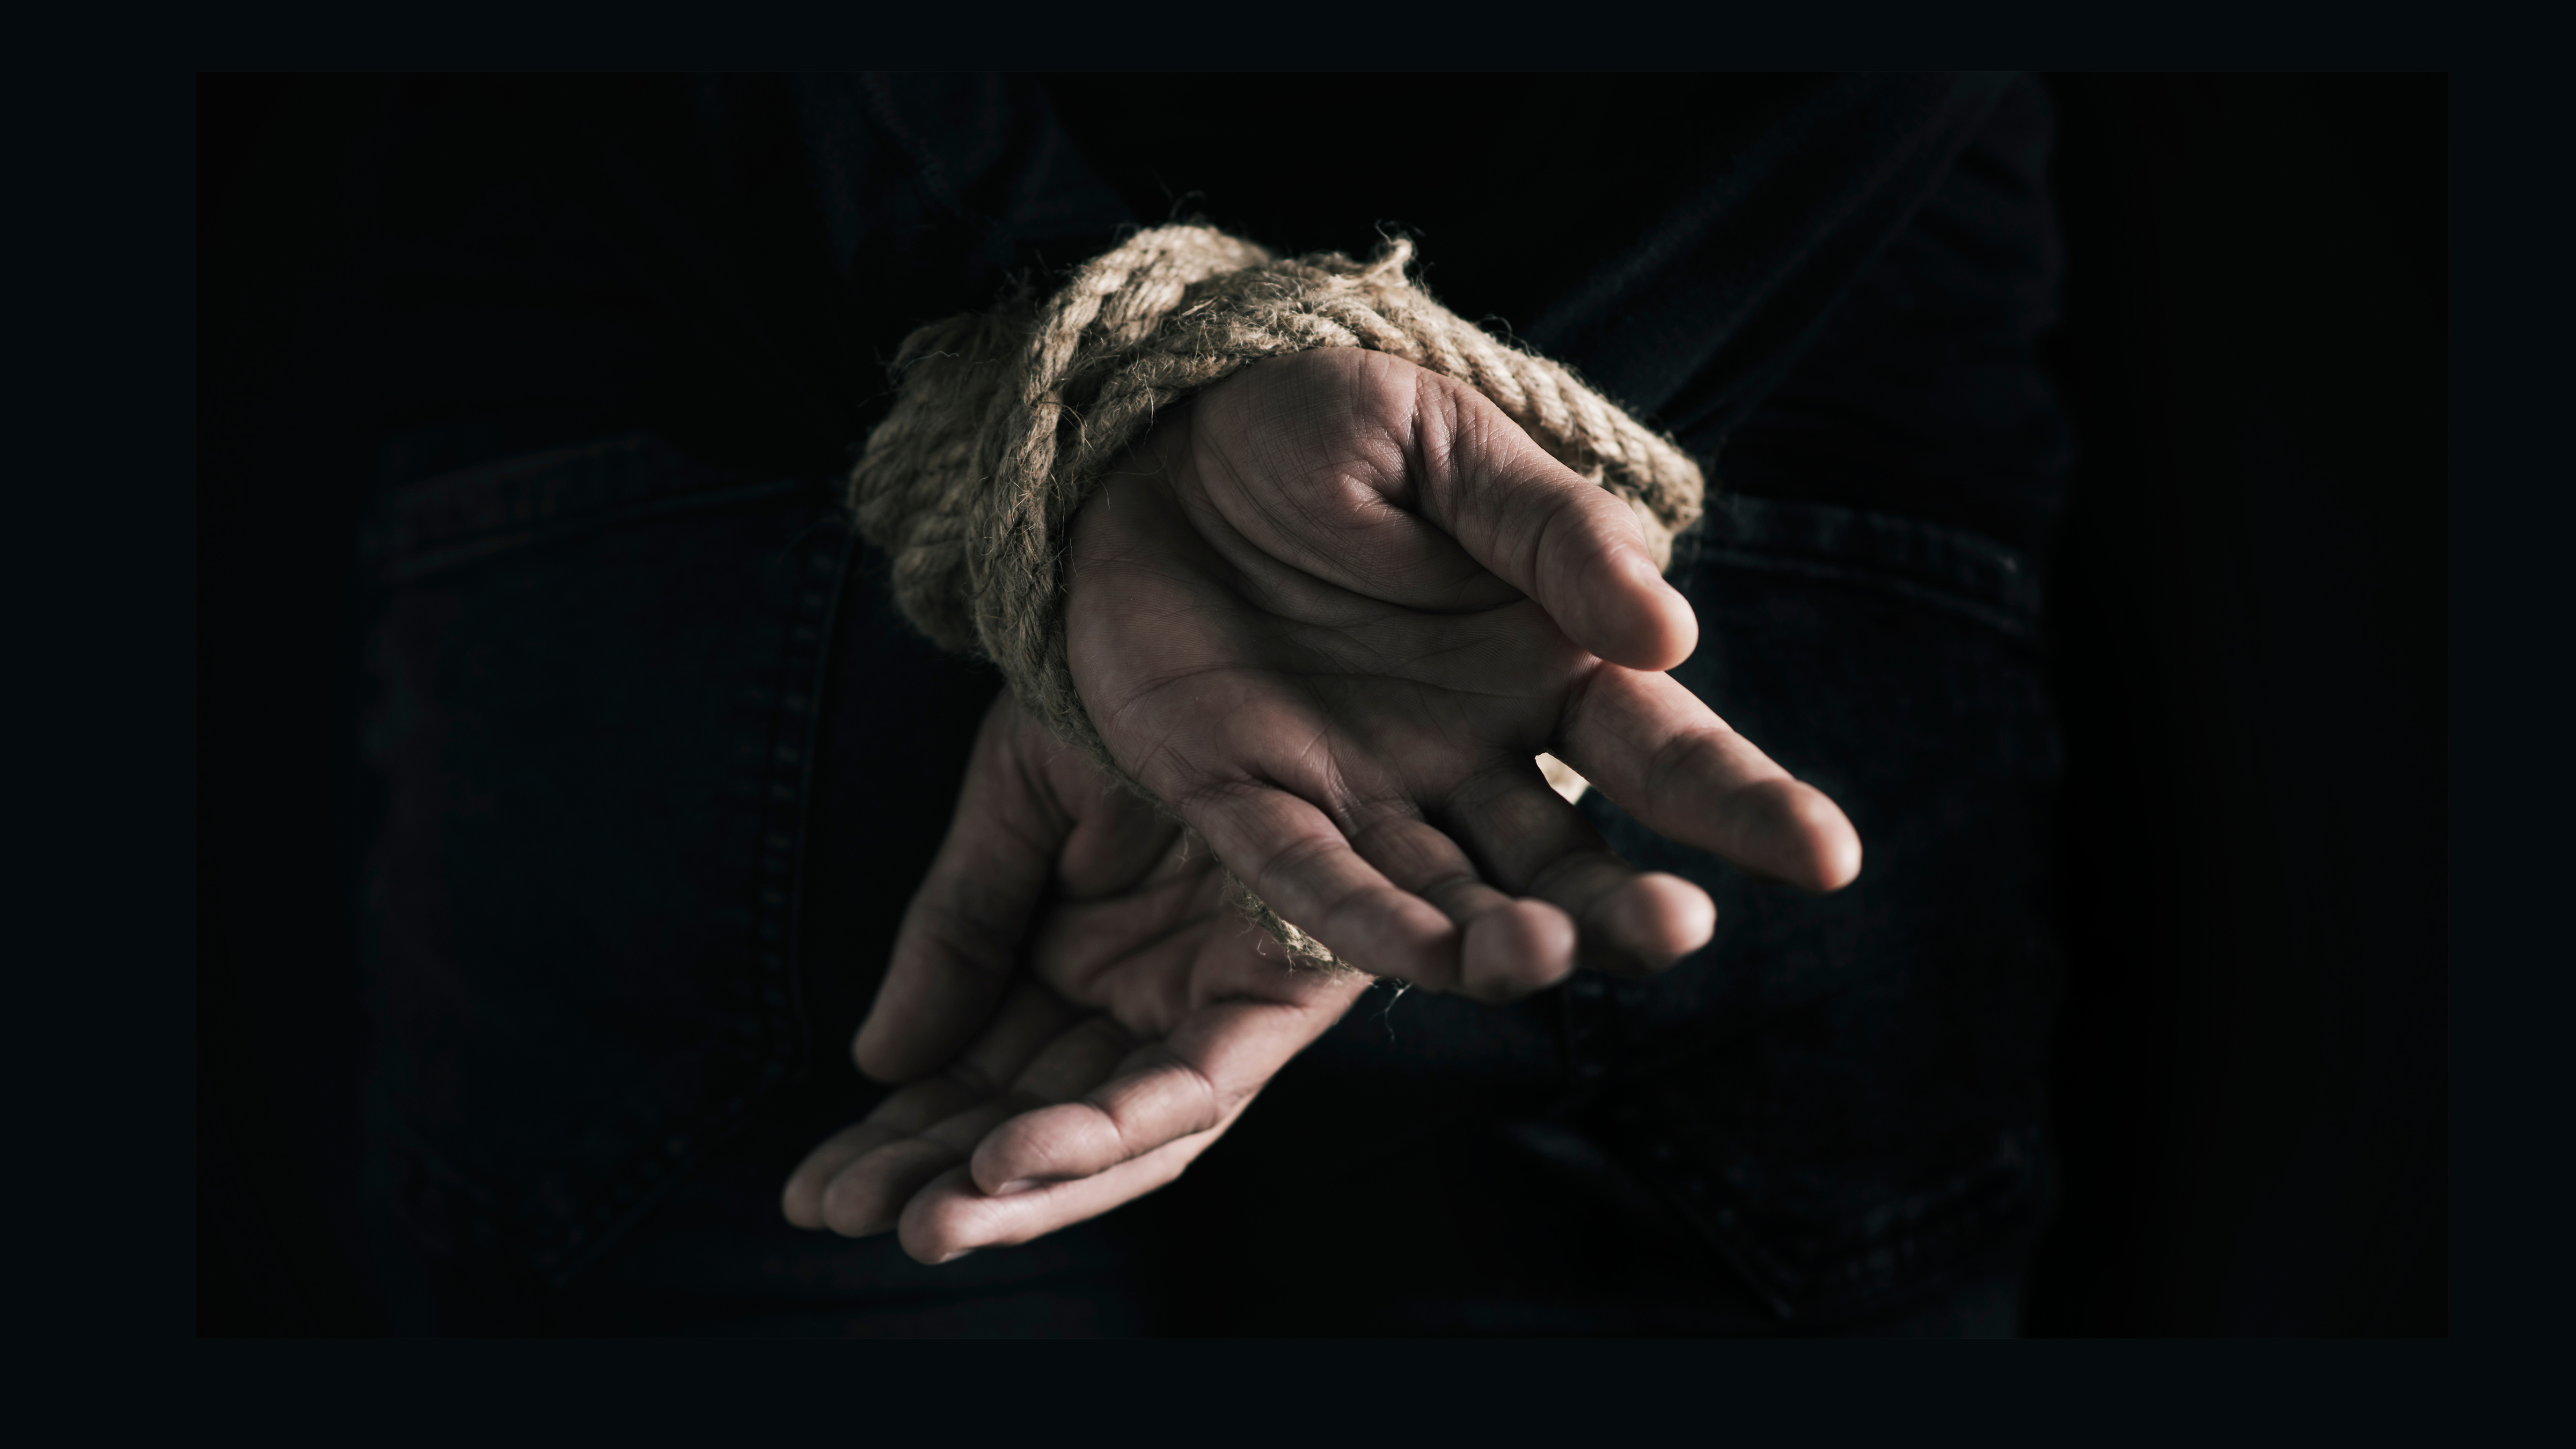 Похищение людей в рф. Мужчина со связанными руками. Руки связаны. Связанные запястья. Мужские руки связаны.